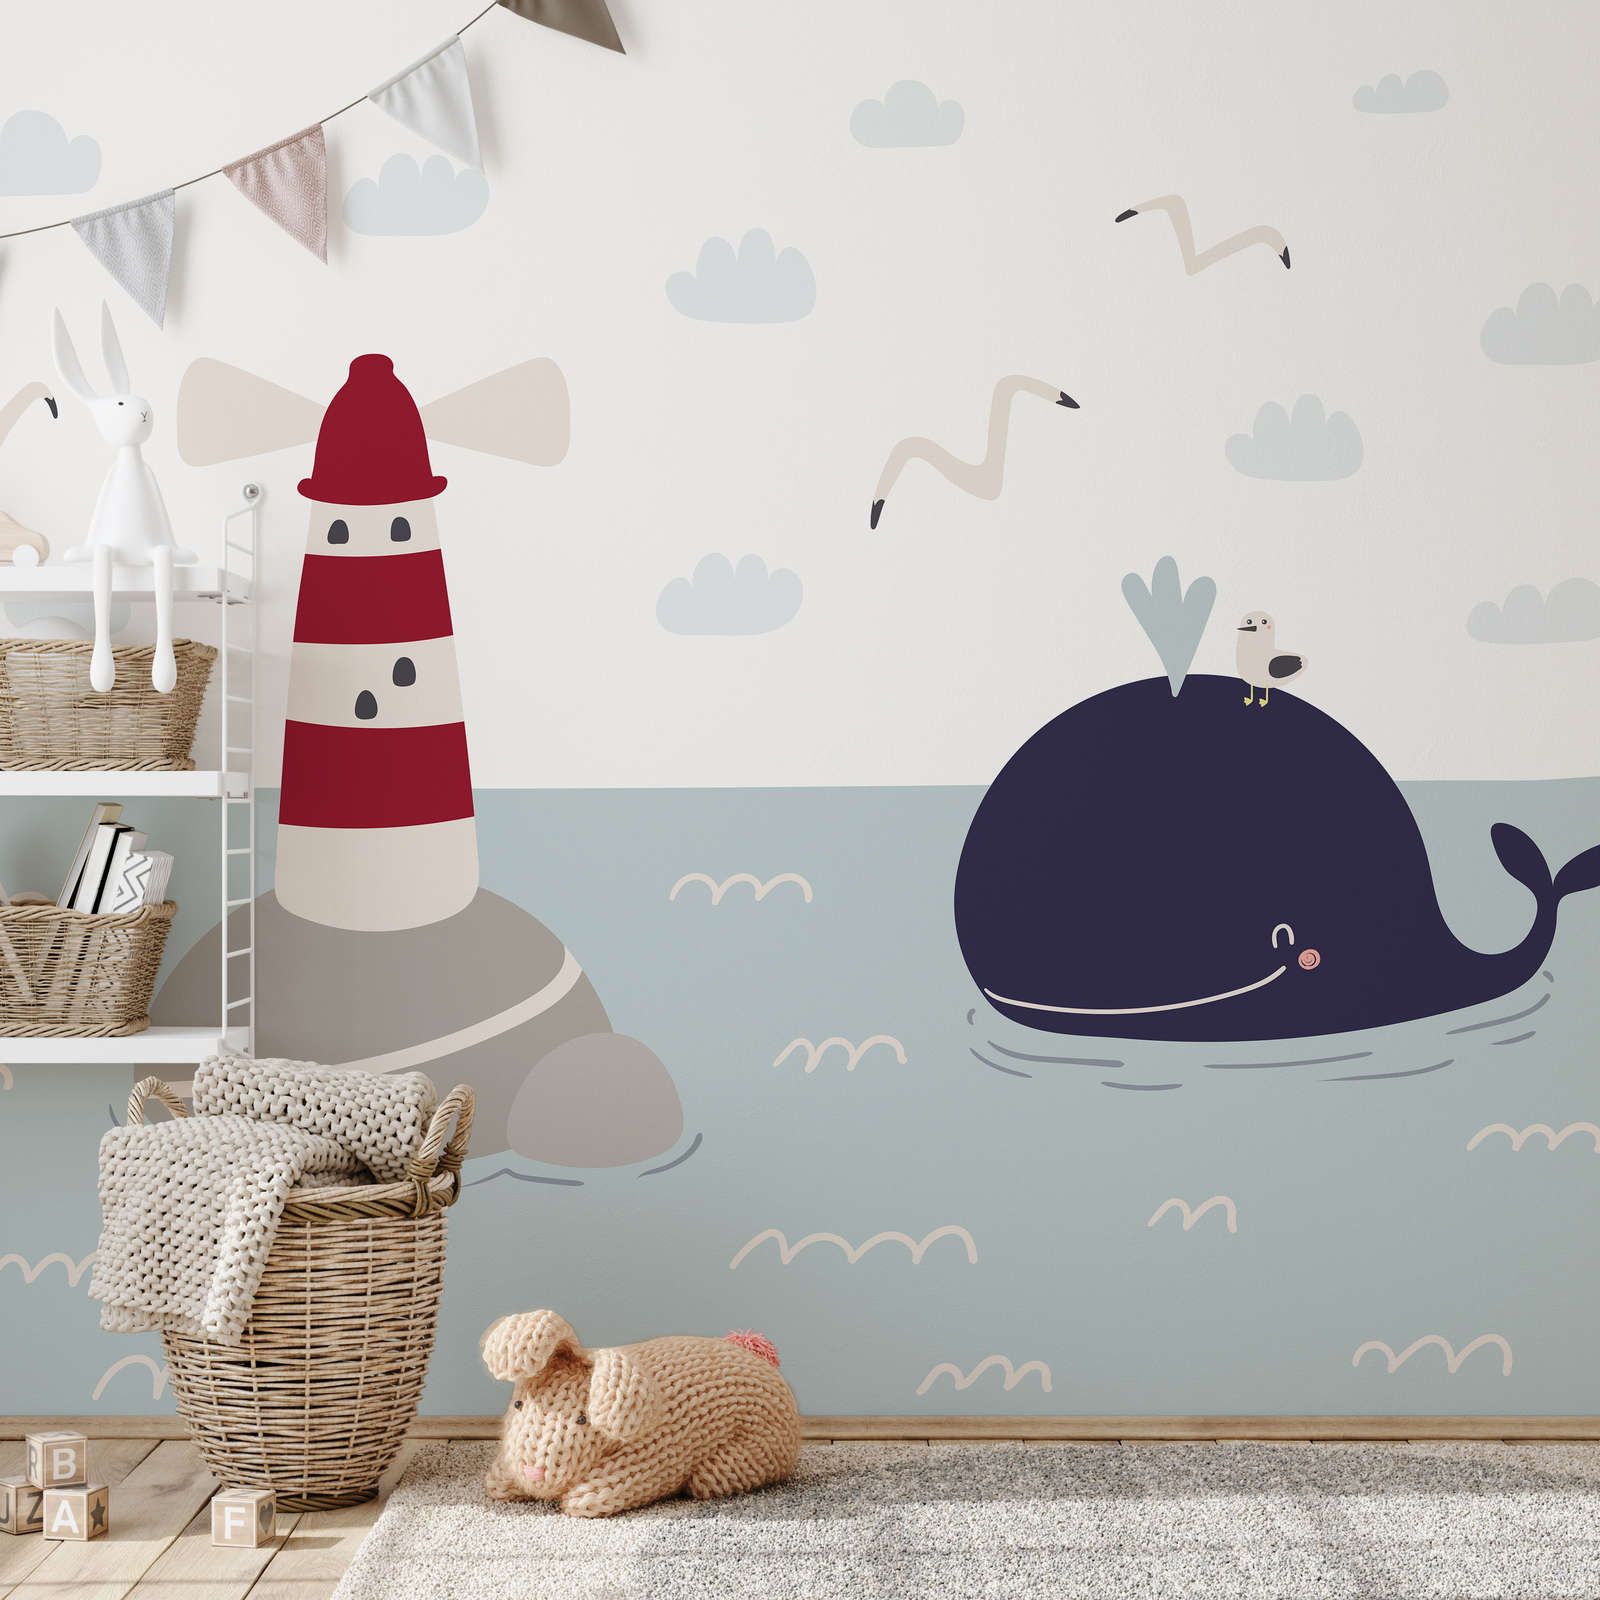             papiers peints à impression numérique pour chambre d'enfant avec phare et baleine - intissé lisse & légèrement brillant
        